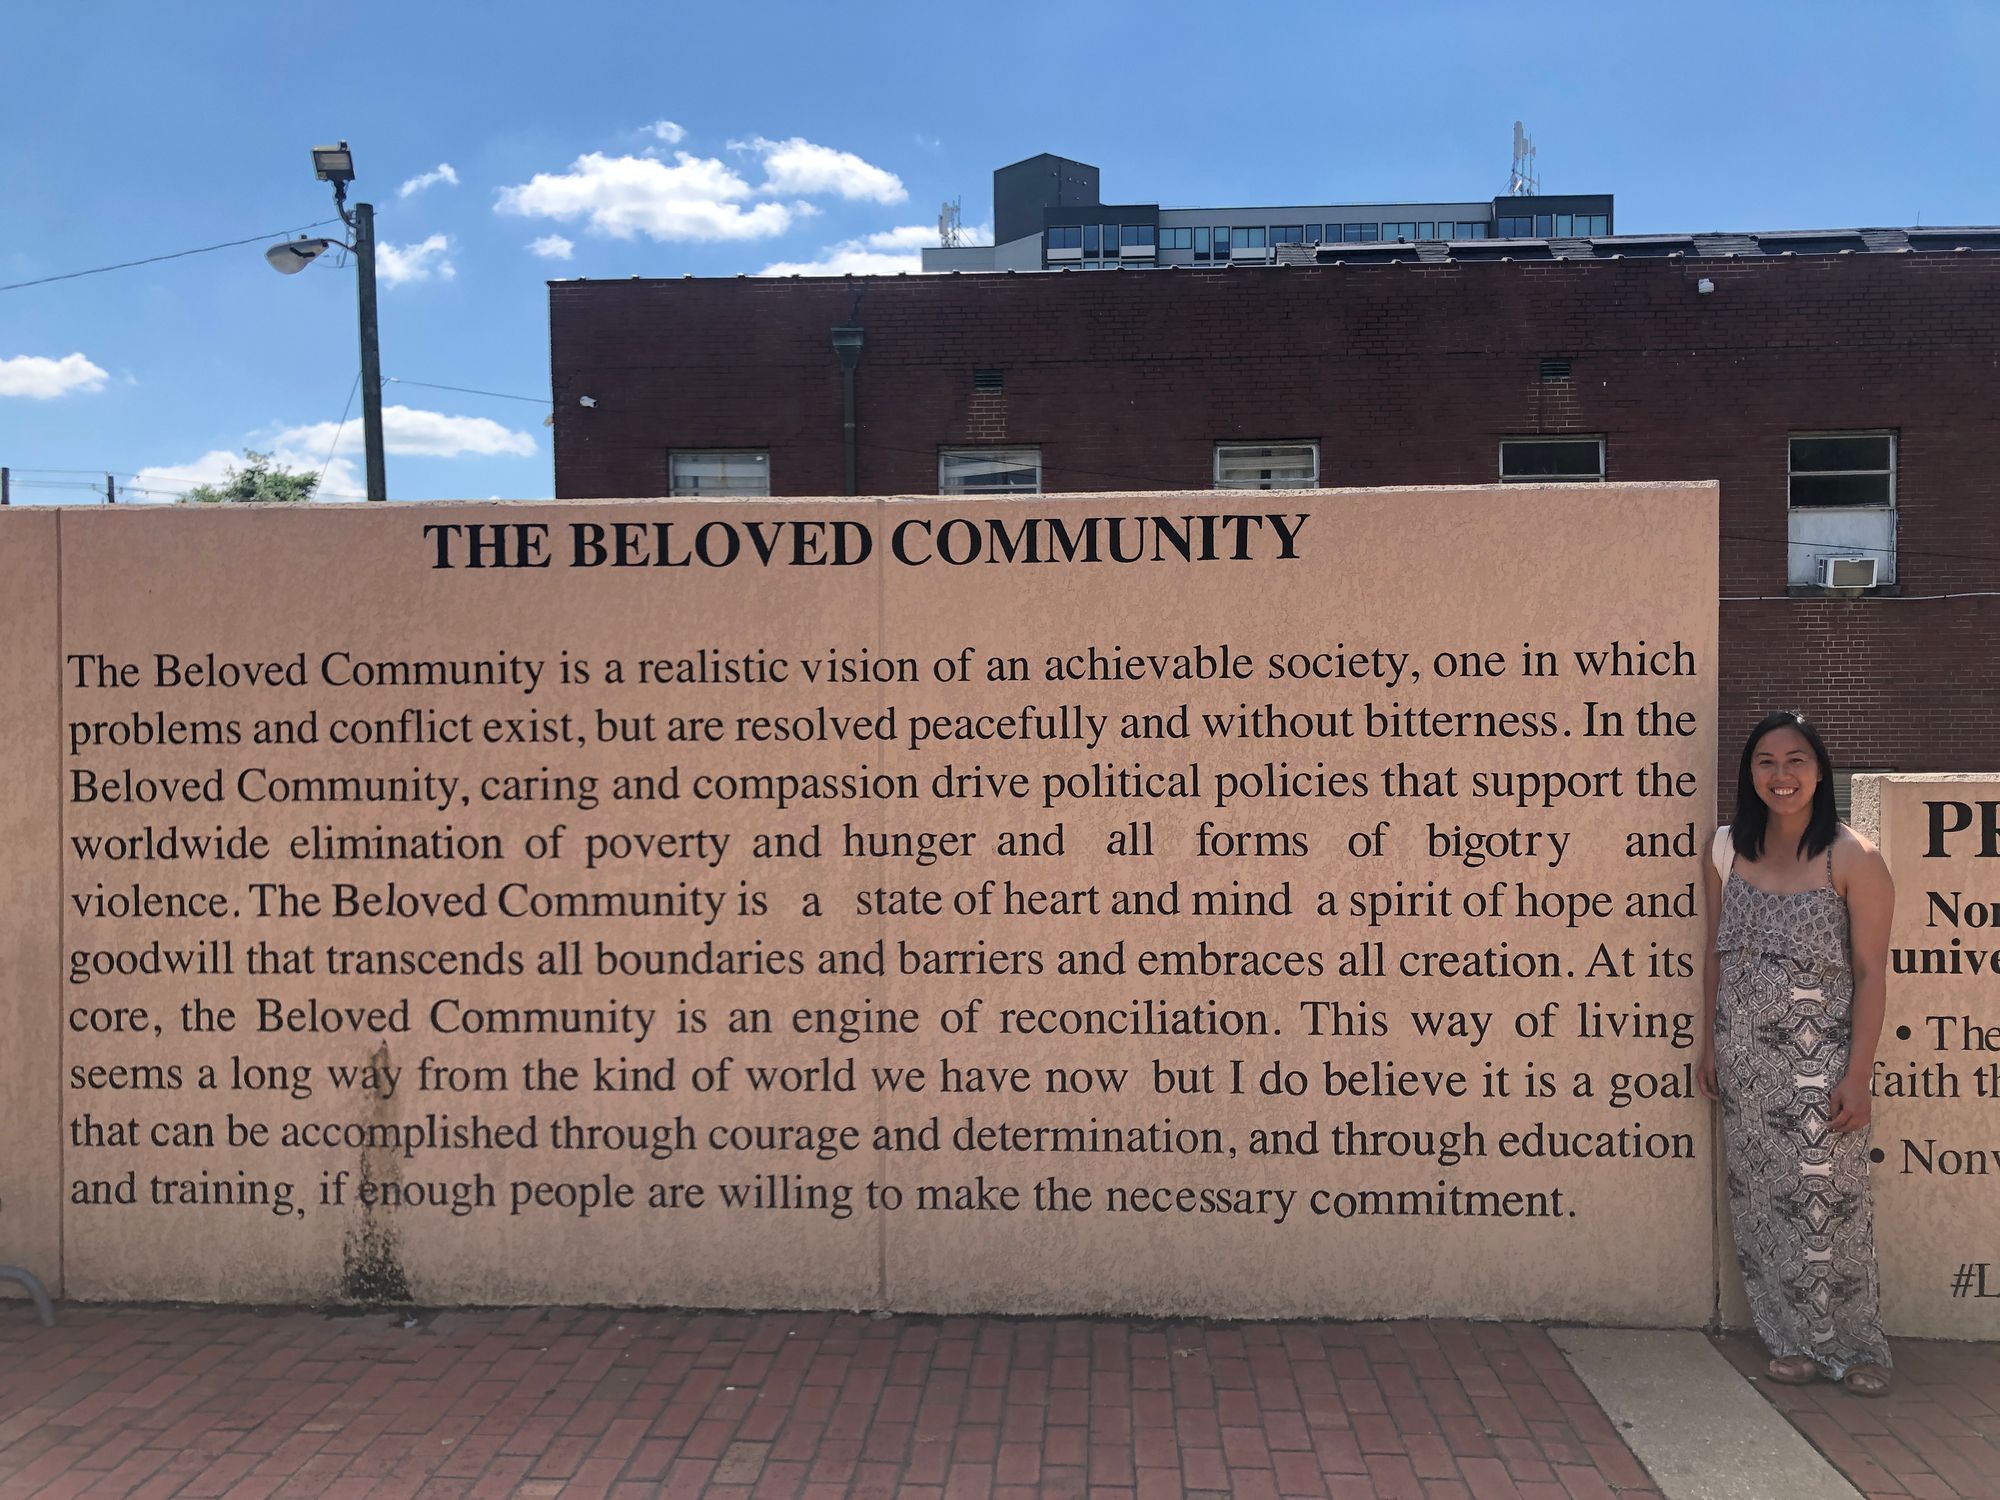 Building MLK's beloved community